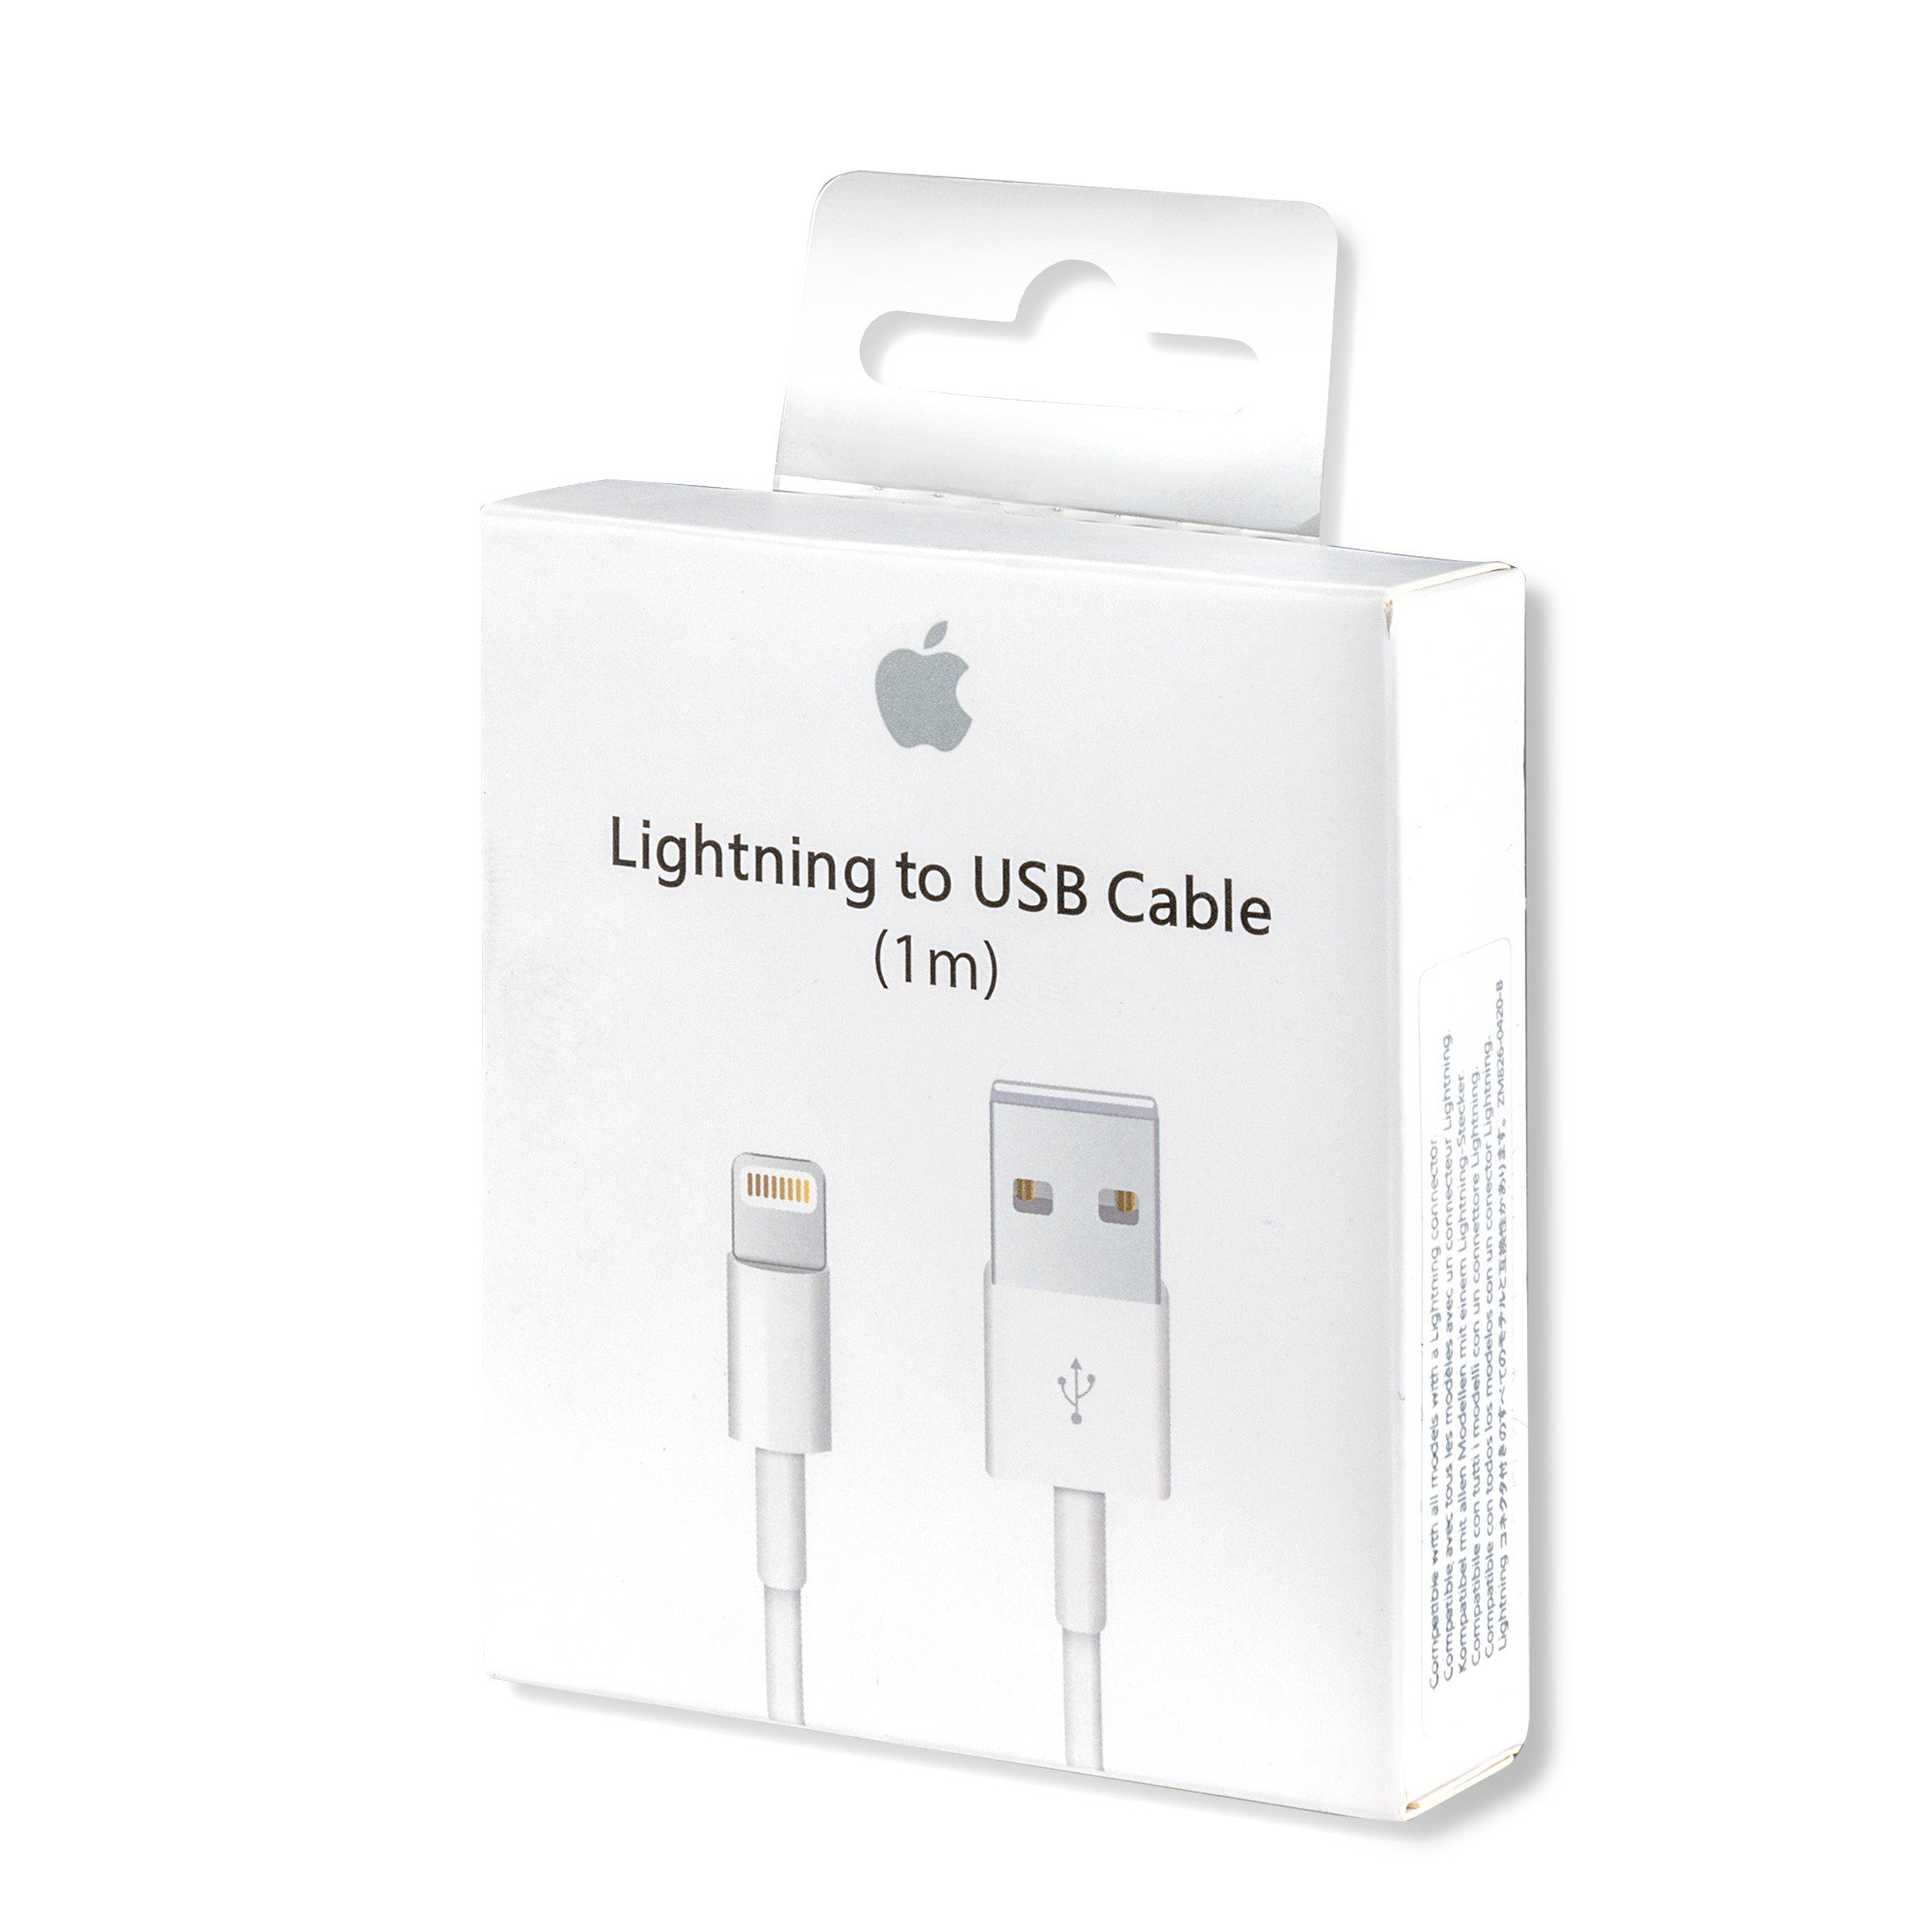 Apple USB lightning kabel MD818ZM/A blister